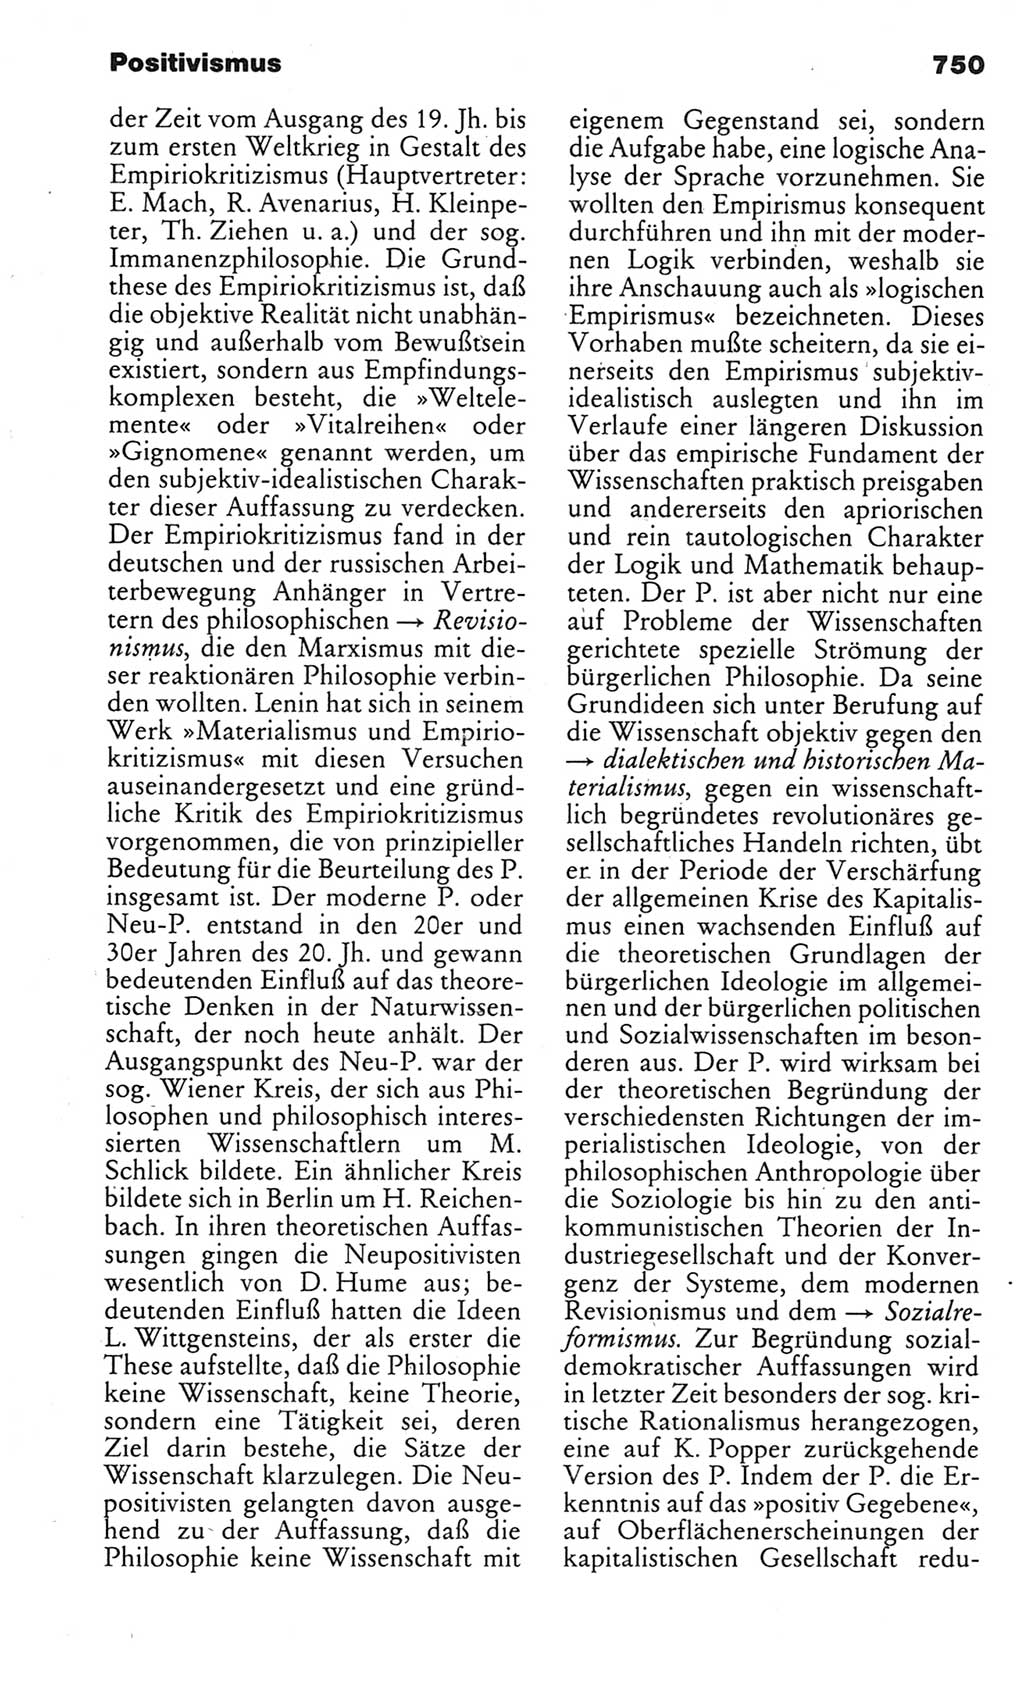 Kleines politisches Wörterbuch [Deutsche Demokratische Republik (DDR)] 1983, Seite 750 (Kl. pol. Wb. DDR 1983, S. 750)